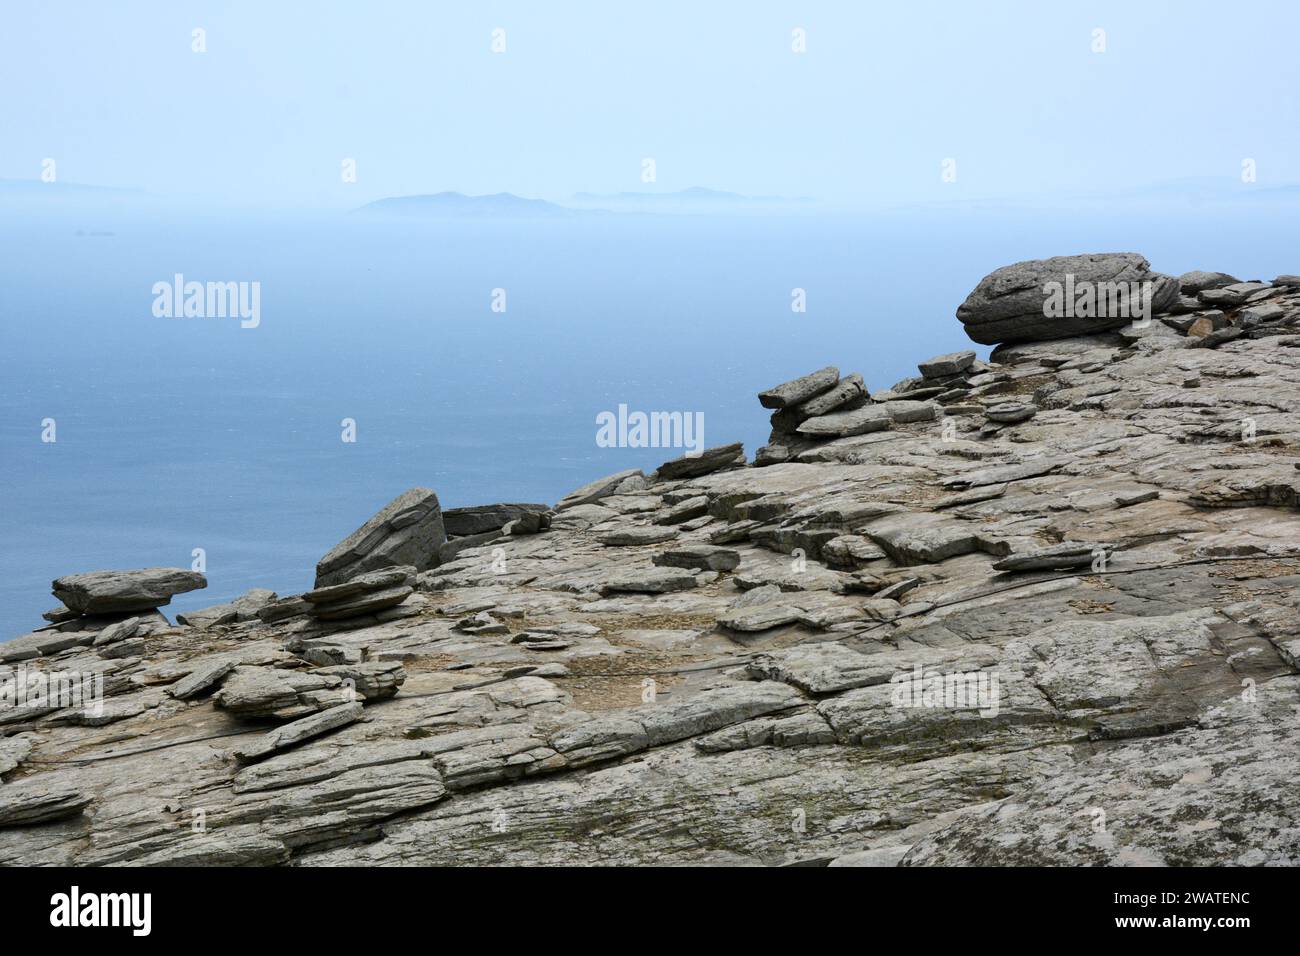 Ein steiler, felsiger Berg und Klippen, die über der Ägäis thronen, an der Südküste der griechischen Insel Ikaria, in der Nähe von Karkinagri, Griechenland. Stockfoto